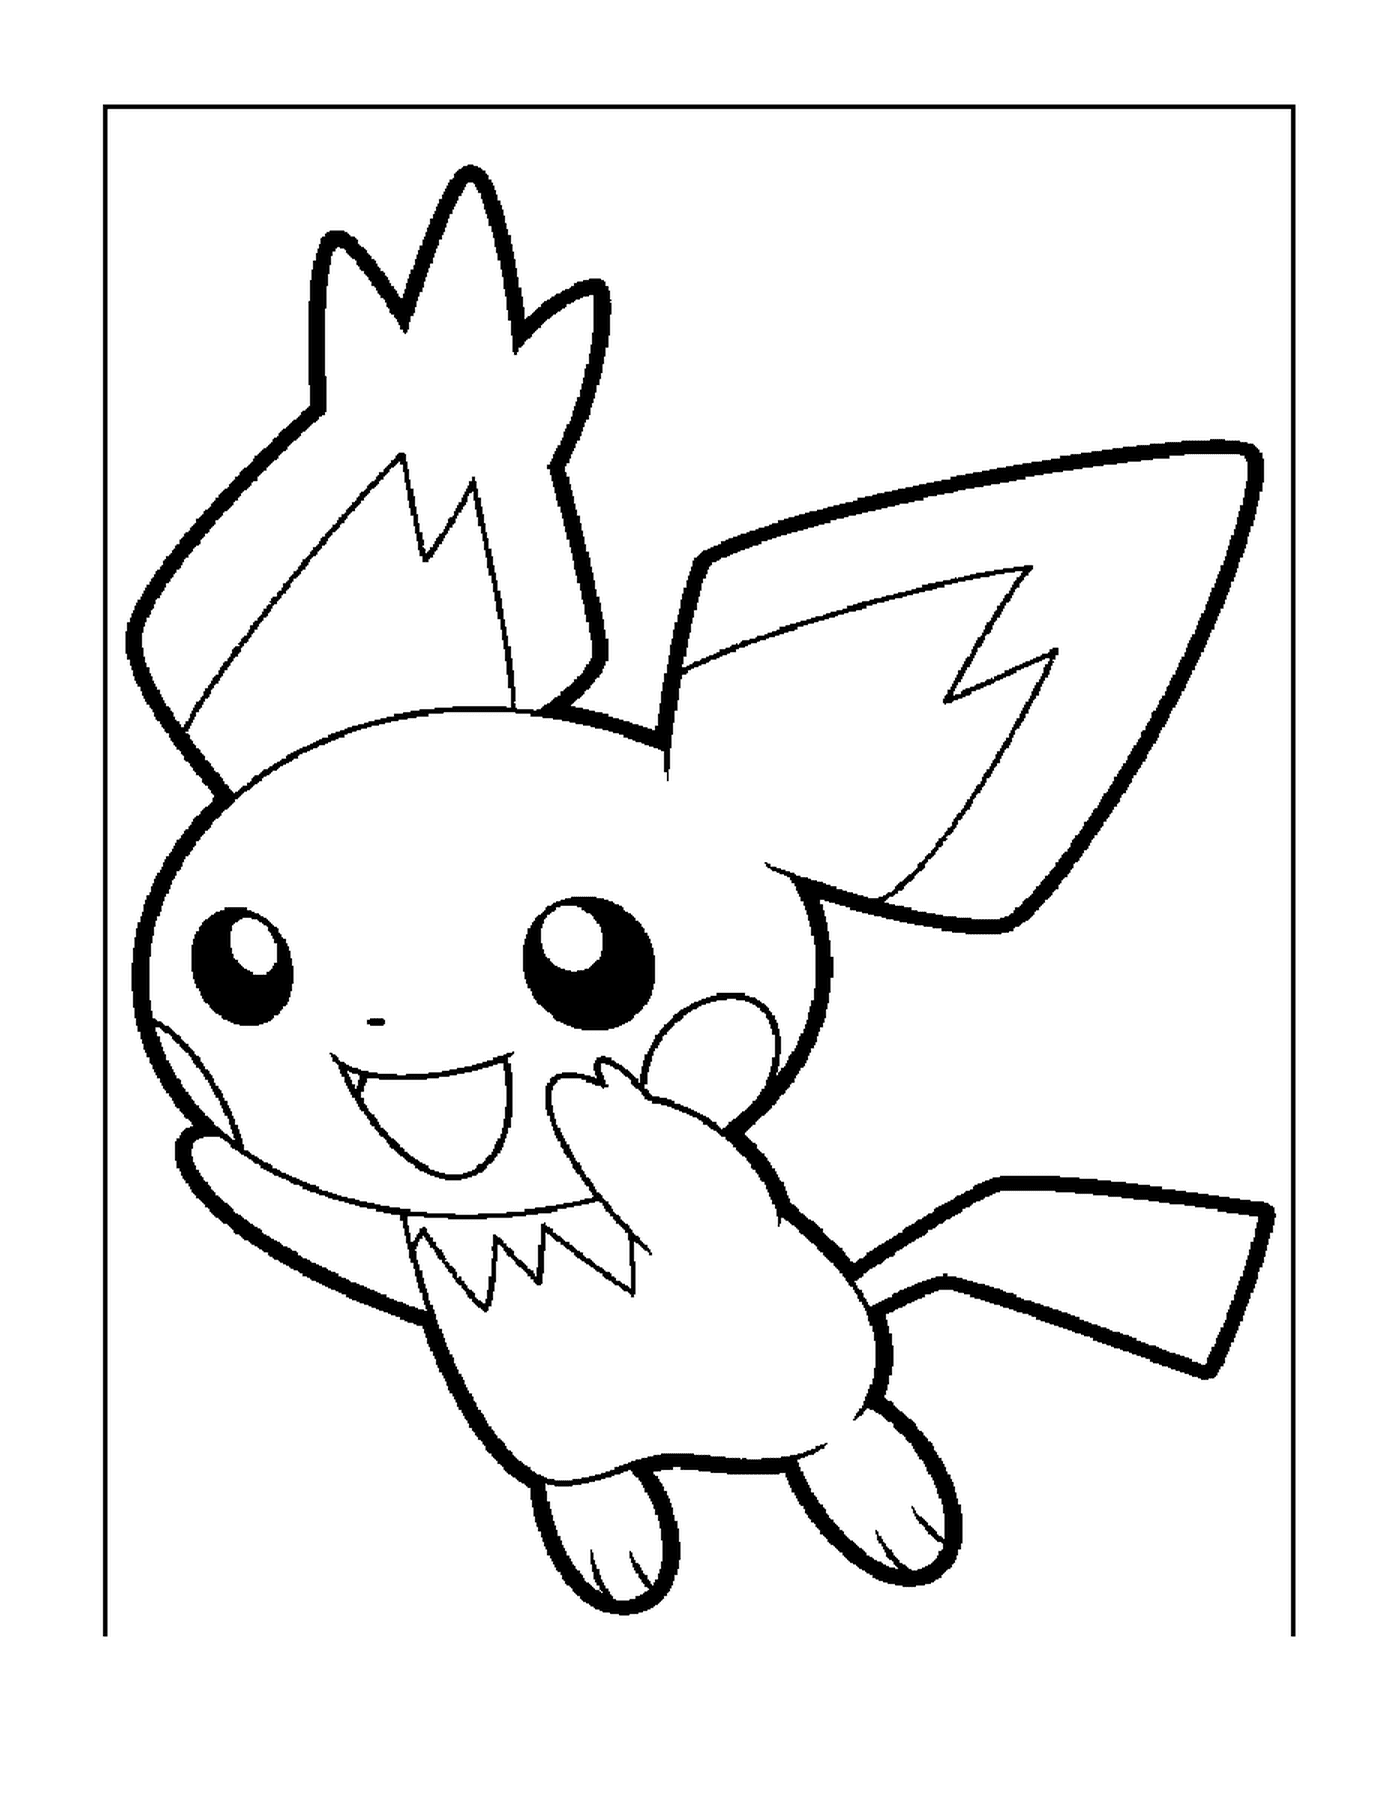  Pikachu, amigo de Pikachu 